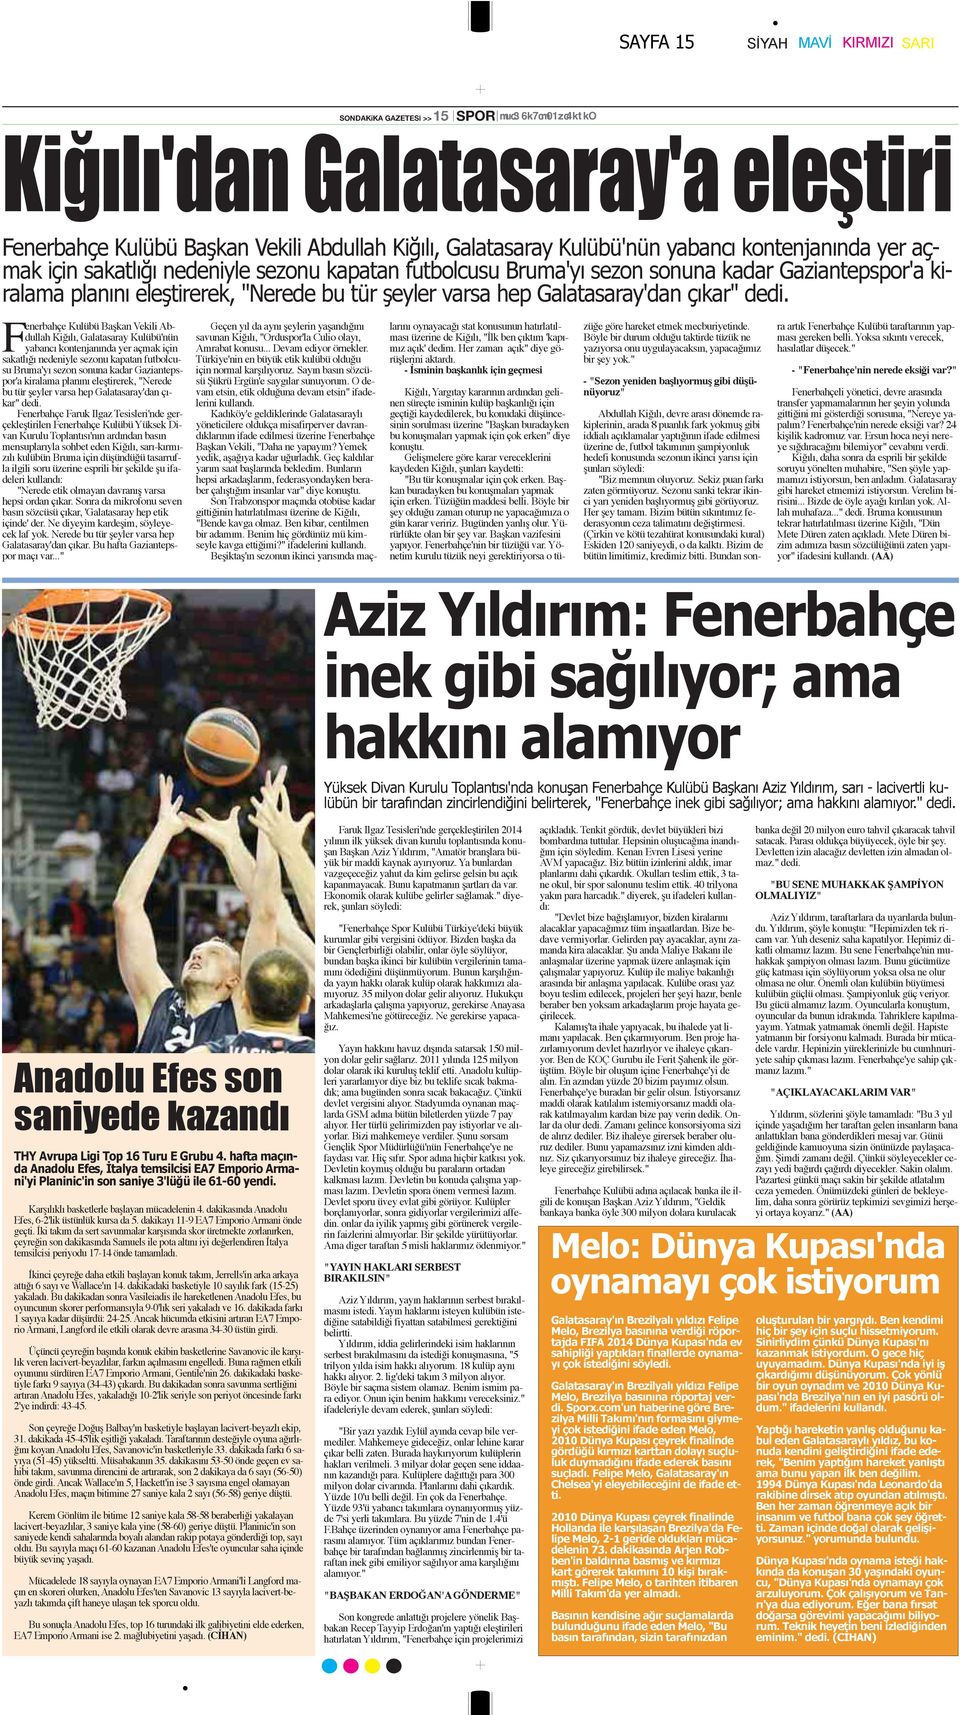 çıkar" dedi. Fenerbahçe Kulübü Başkan Vekili Abdullah Kiğılı, Galatasaray Kulübü'nün yabancı  çıkar" dedi.